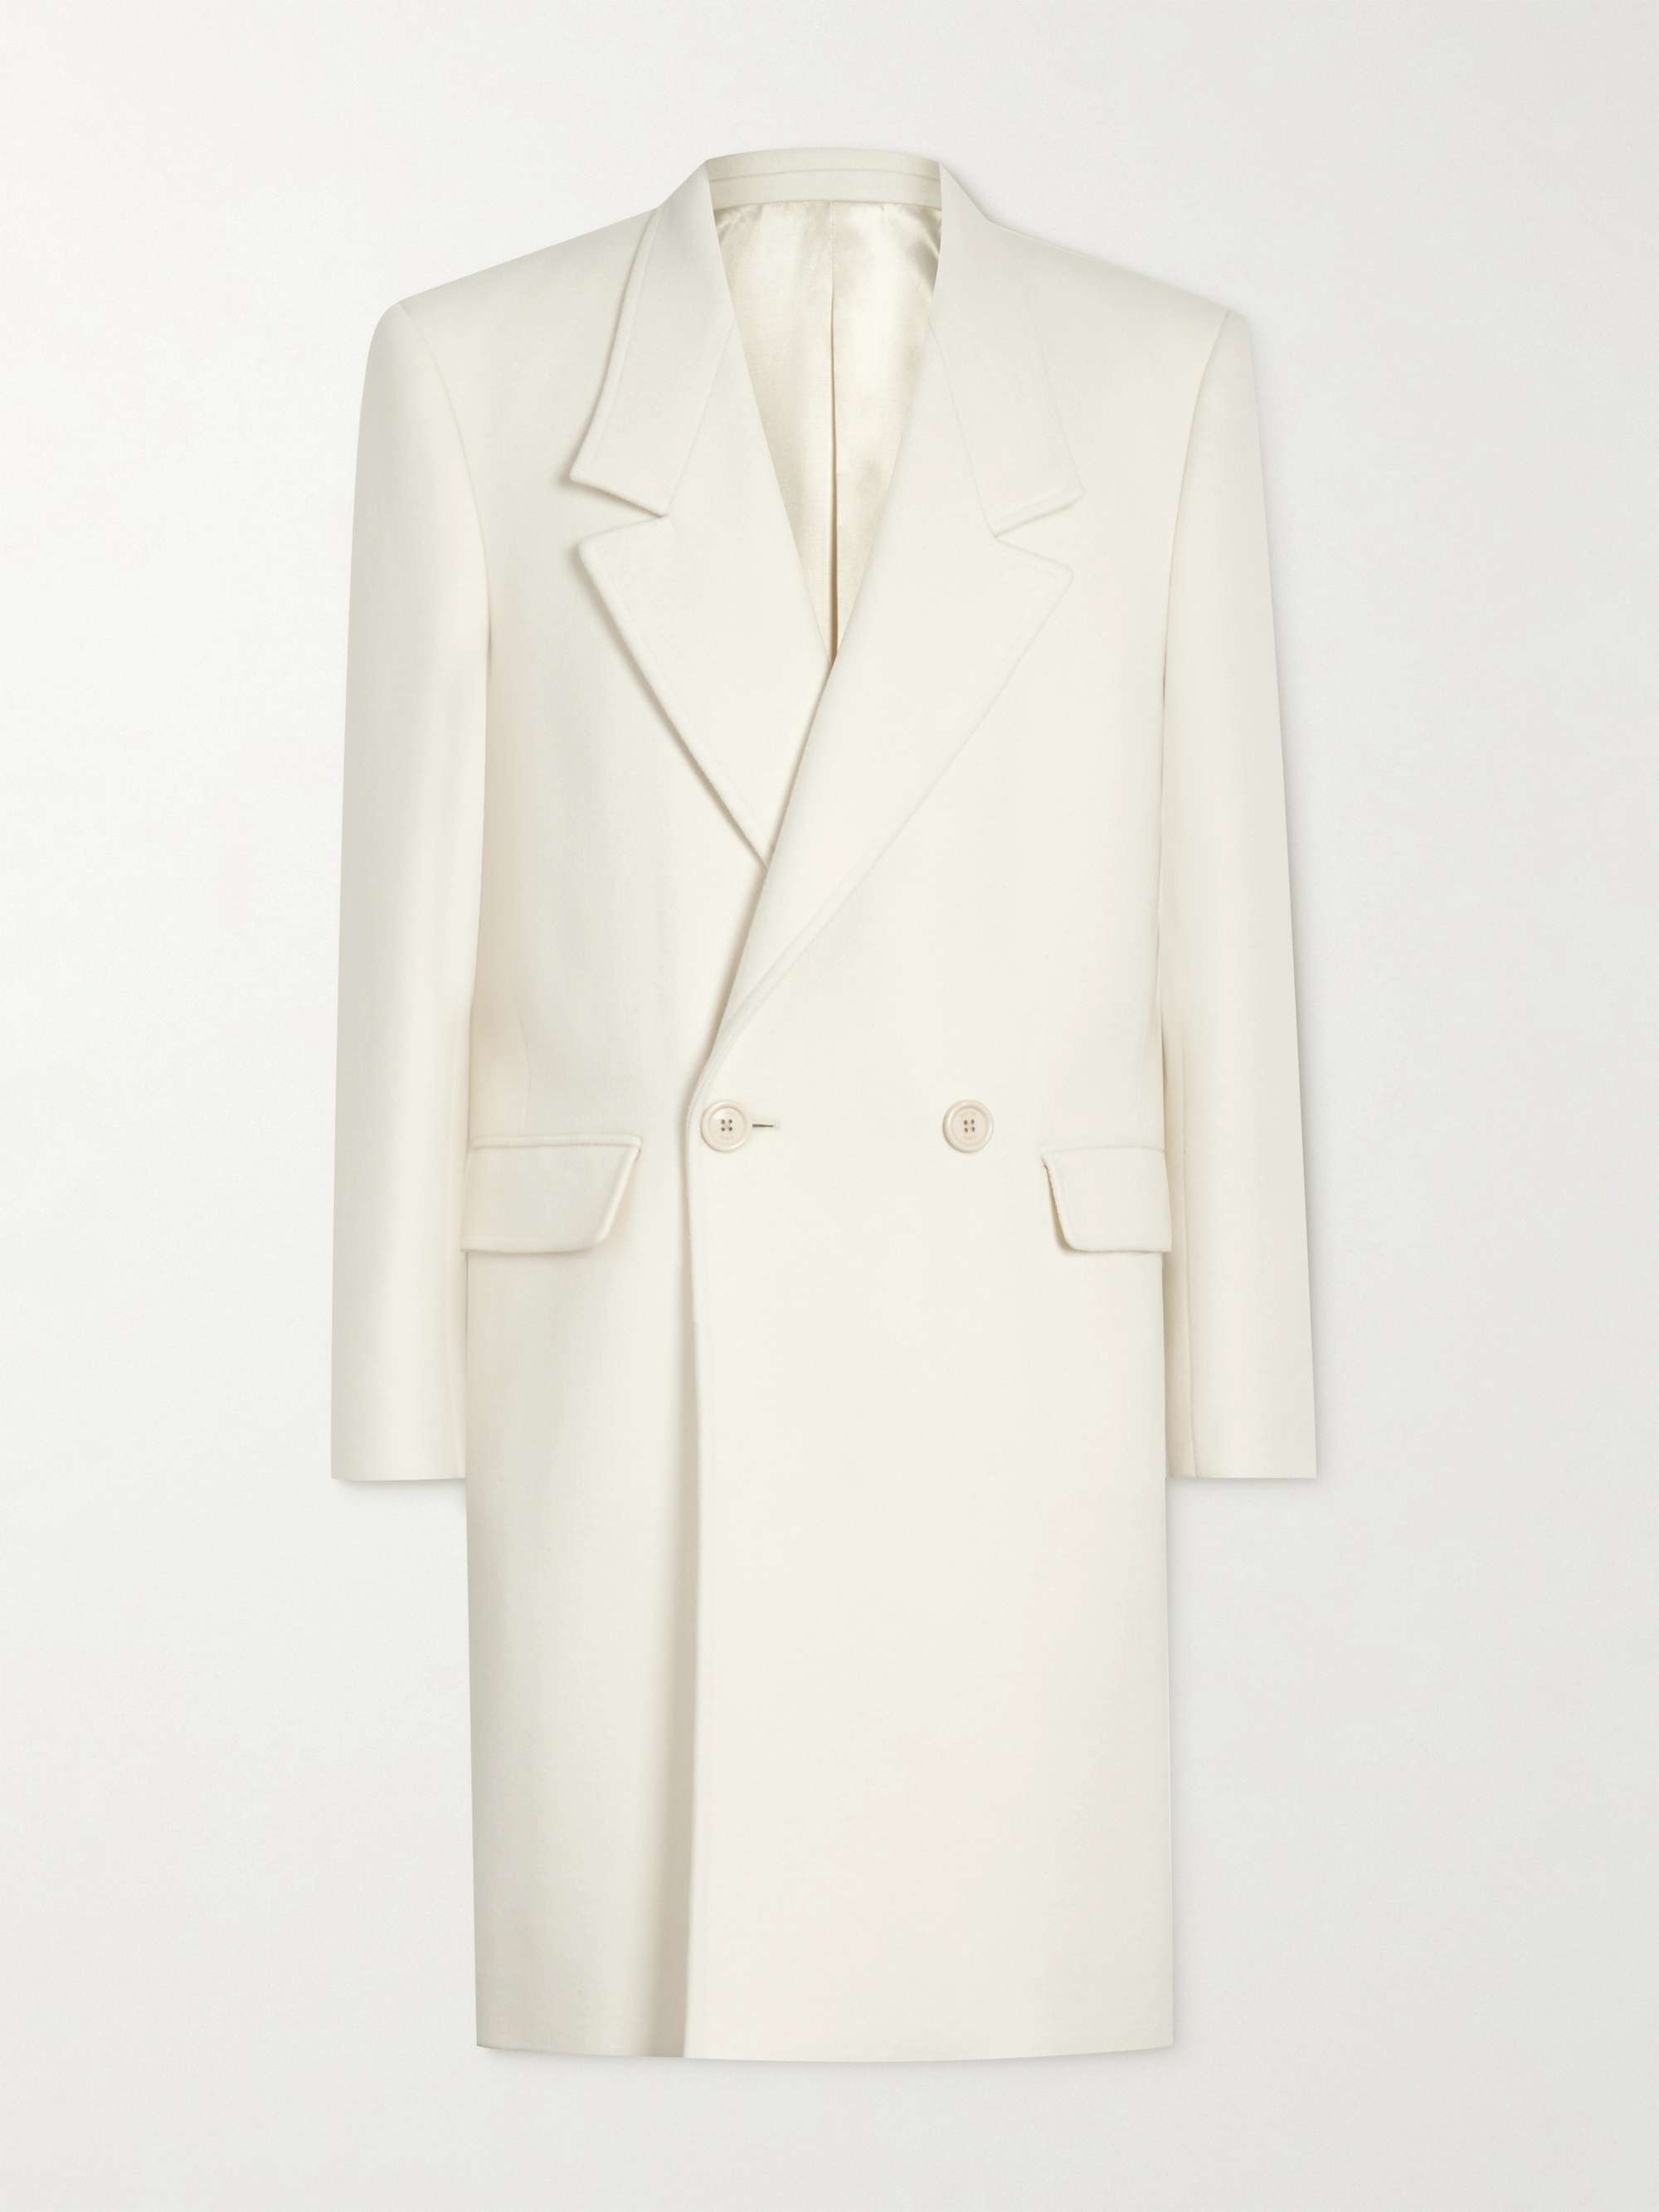 CELINE HOMME Double-Breasted Cashmere Coat for Men | MR PORTER